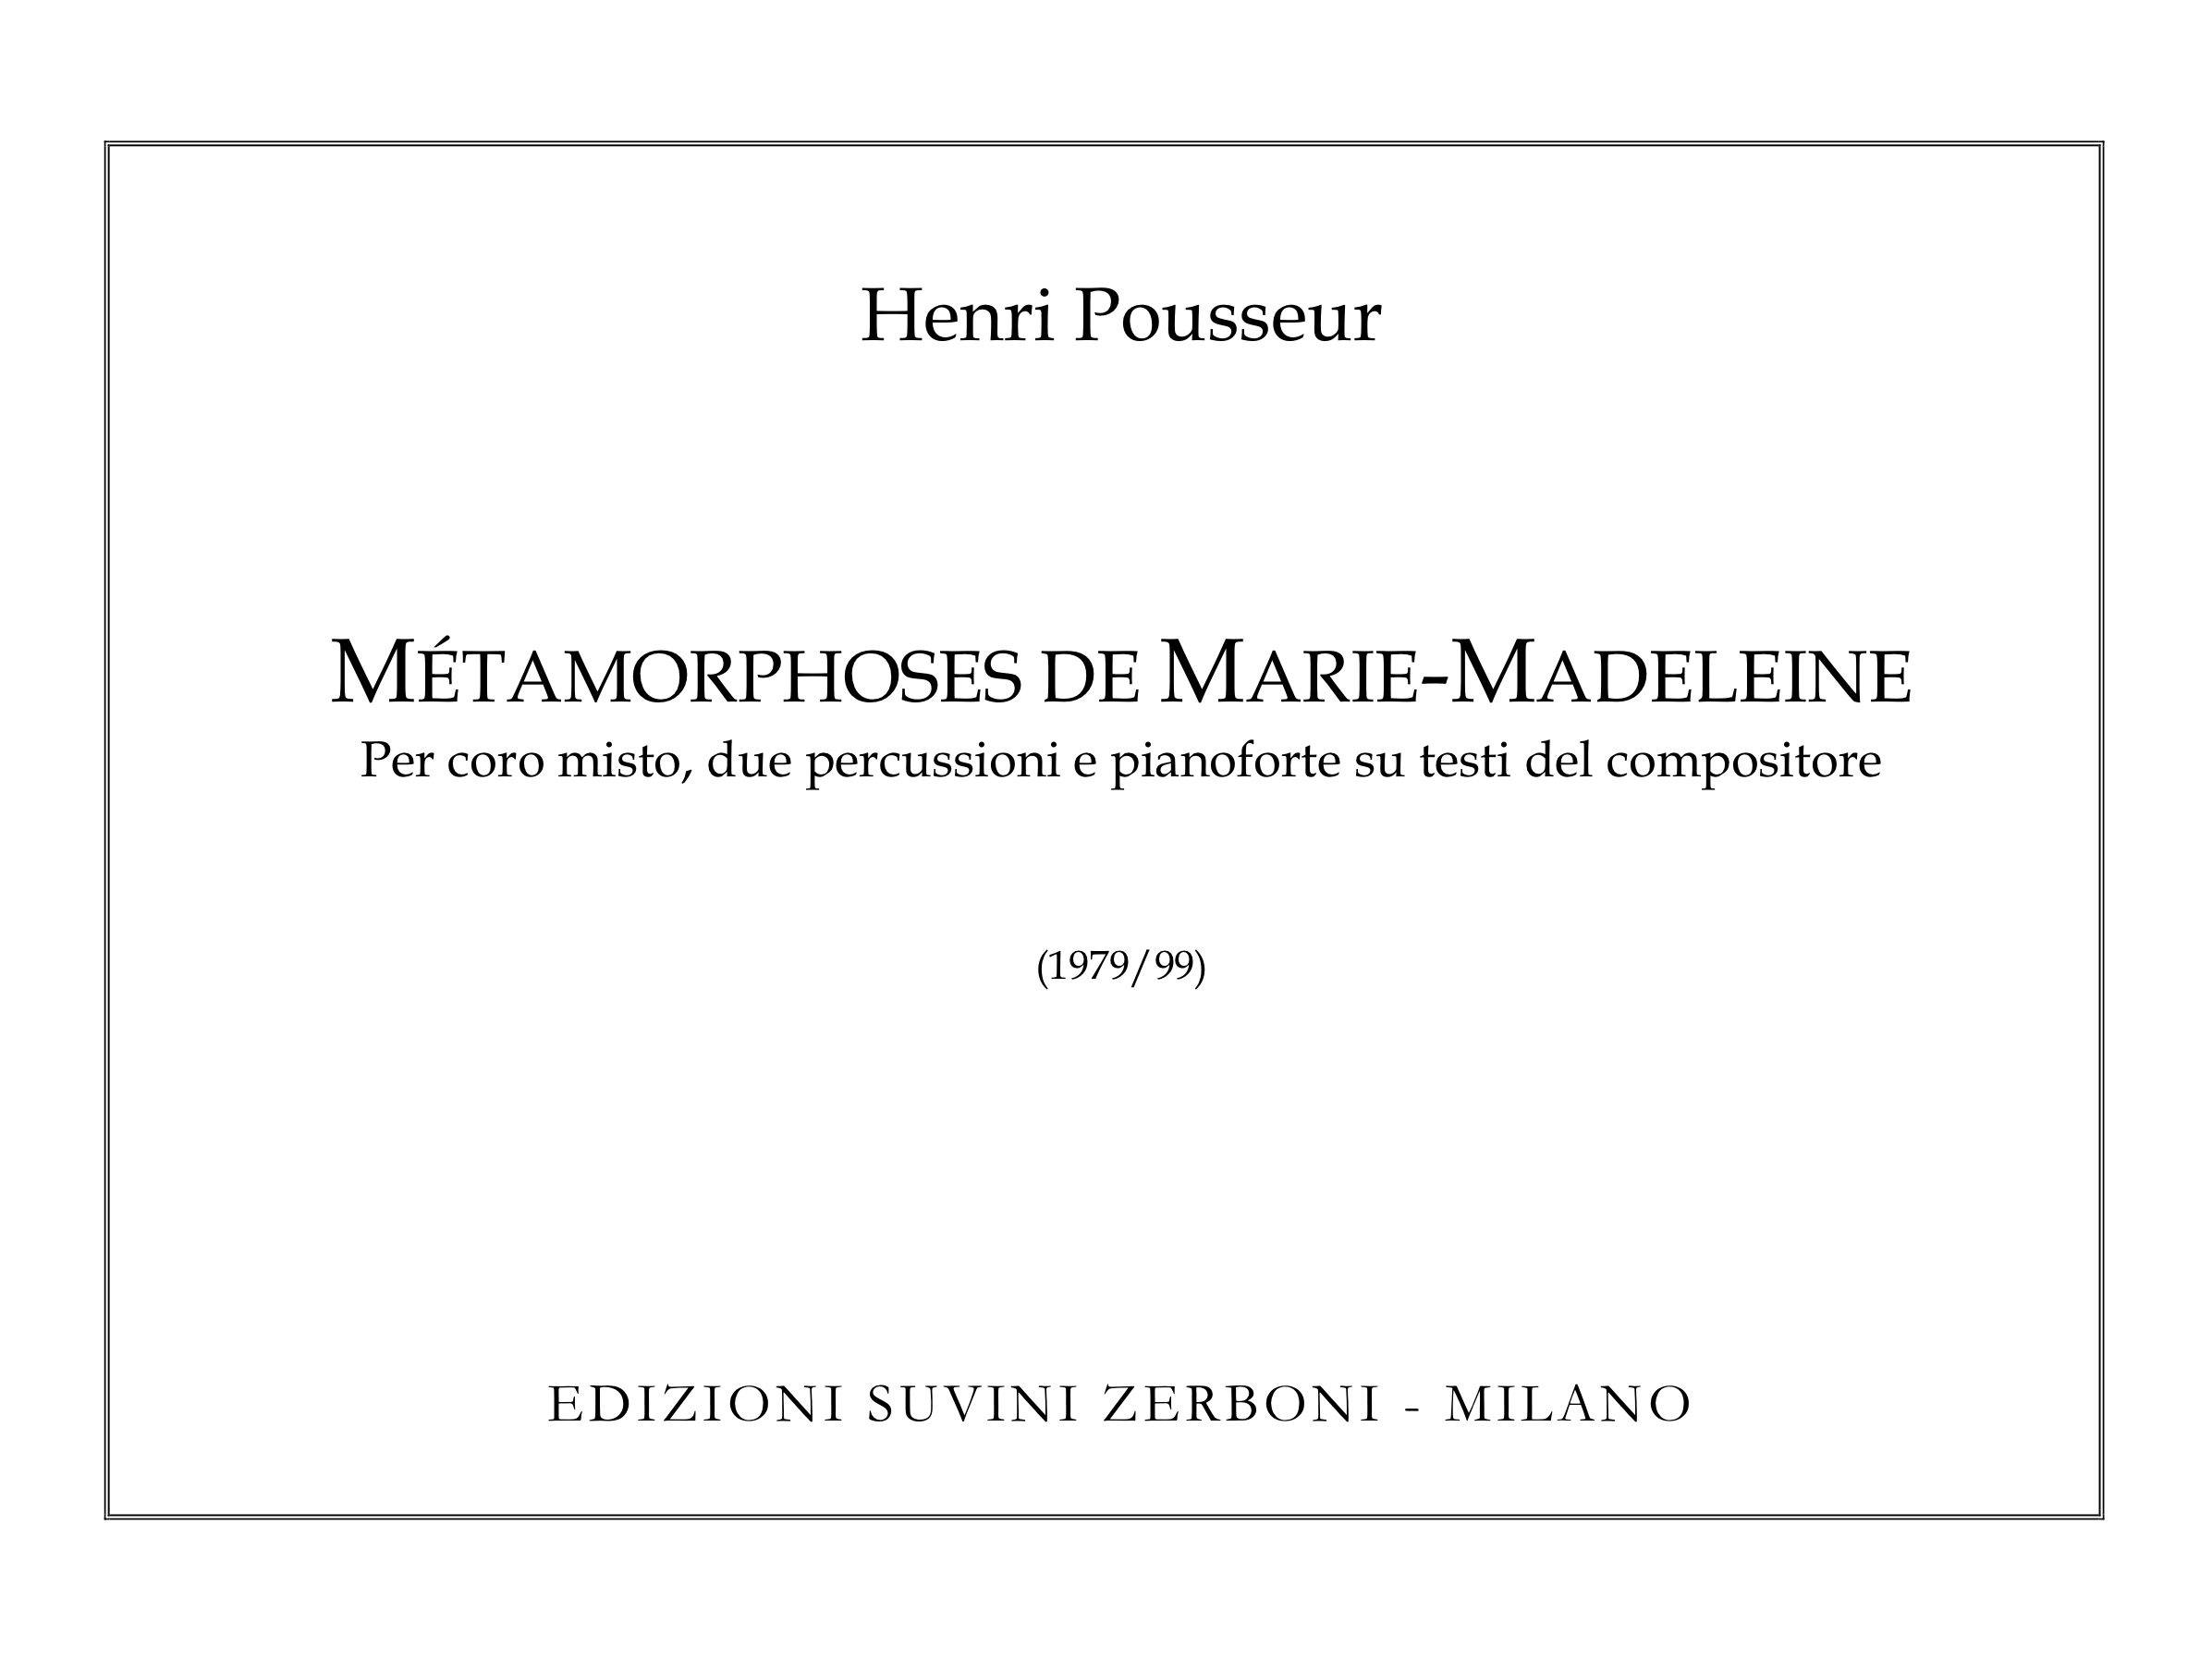 Metamorphoses de marie madeleine_Pousseur 1